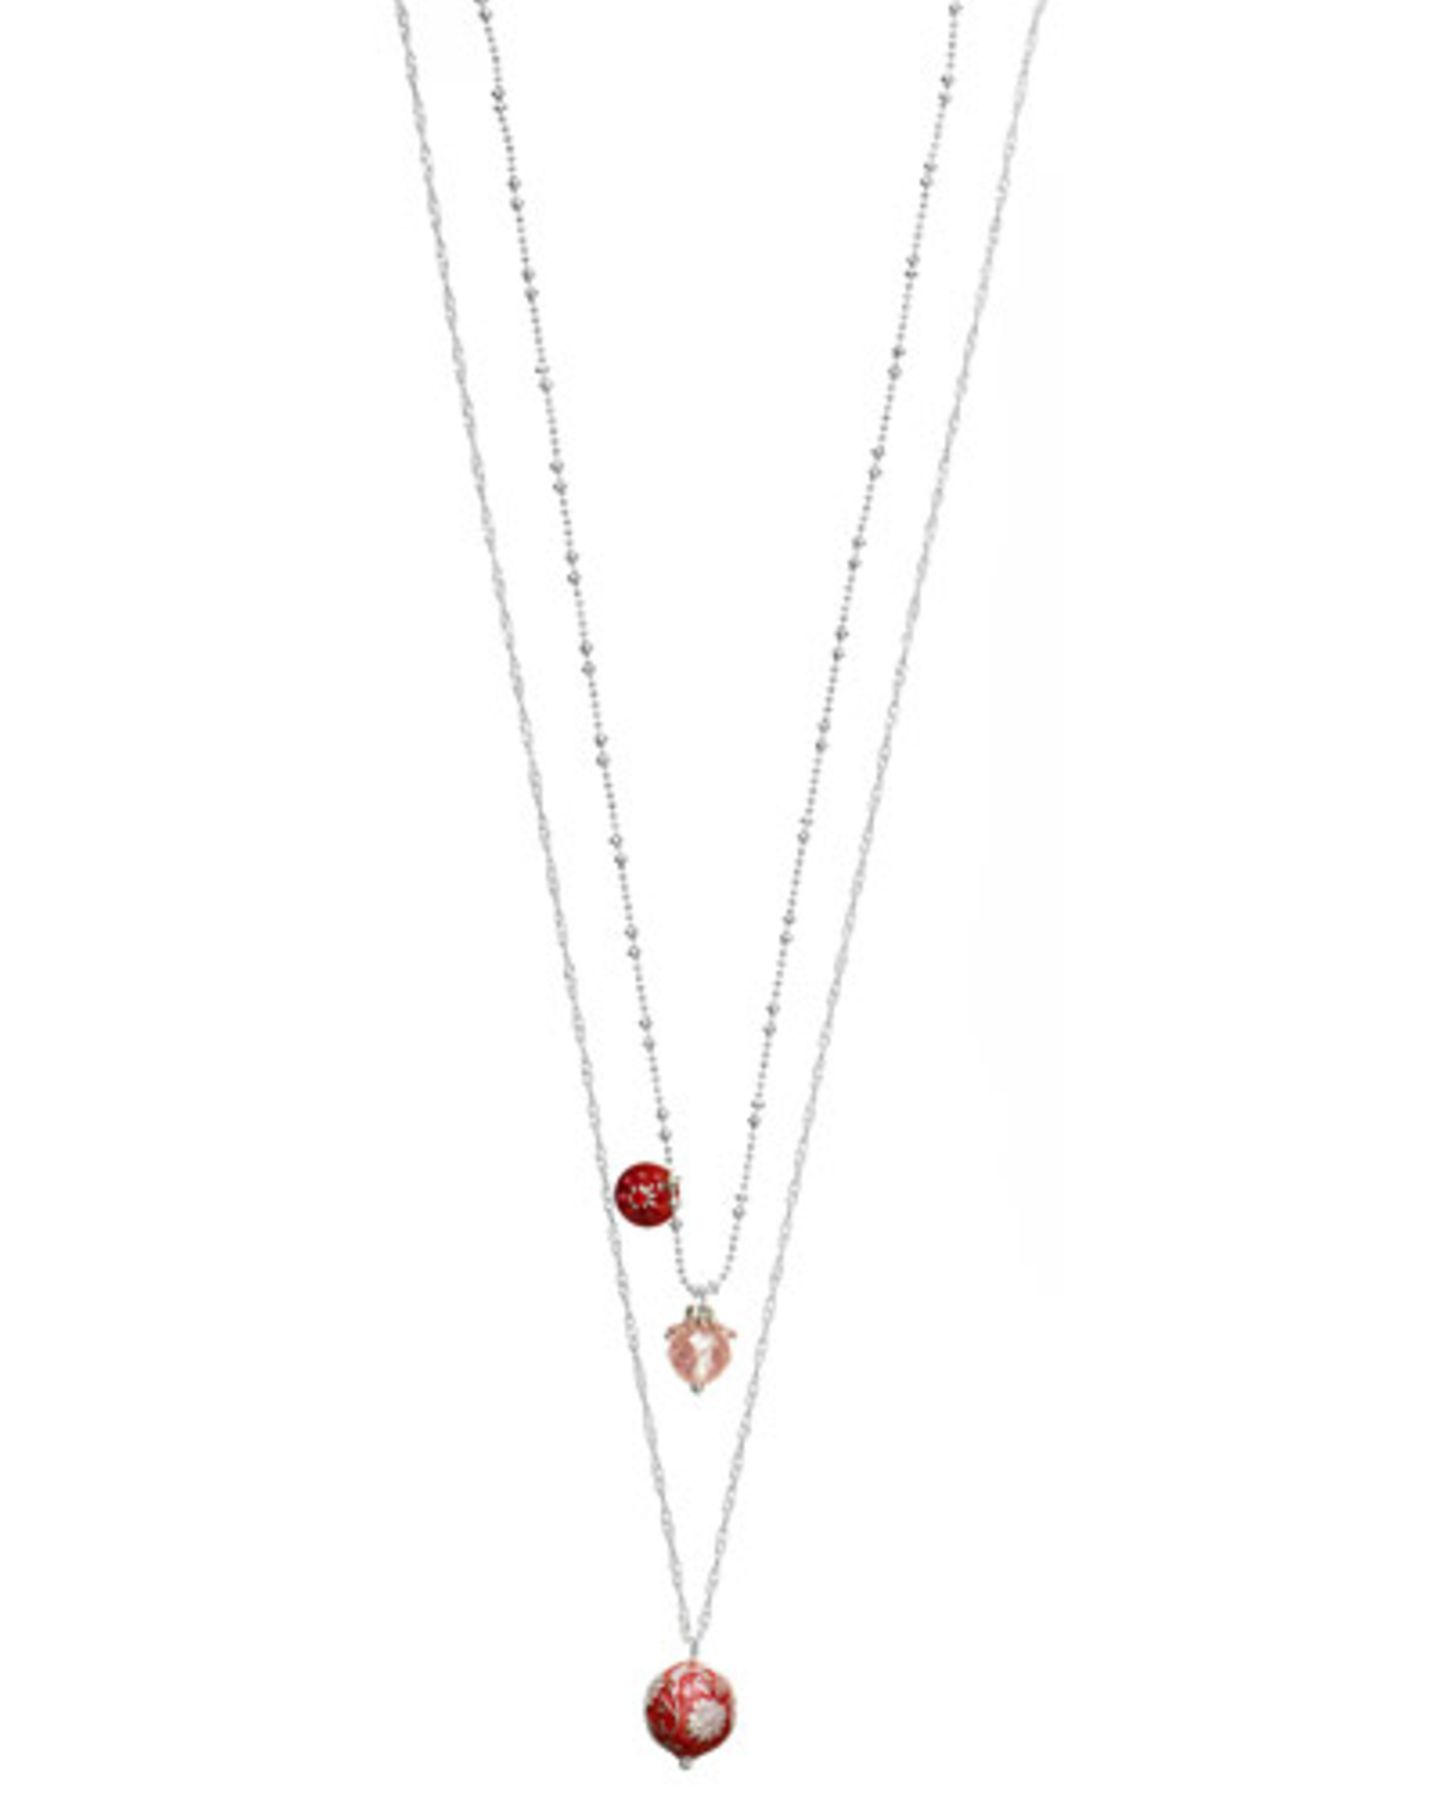 Silberkette mit kleinen roten Perlen von Pilgrim, um 45 Euro.